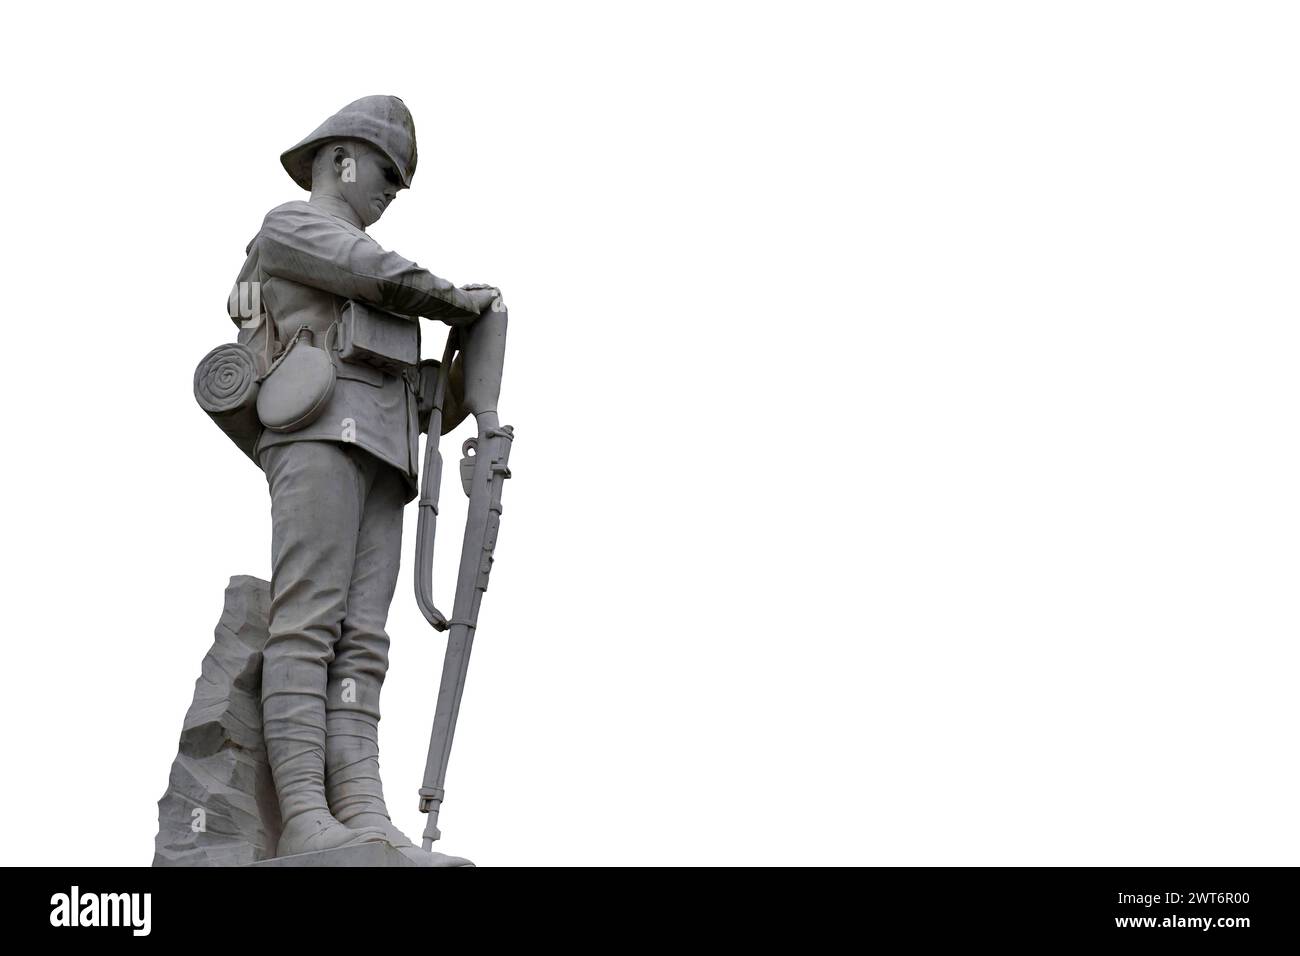 Monument commémoratif sculpture d'un soldat, commémorant les braves soldats qui ont sacrifié leur vie à la guerre. Isolé sur fond blanc Banque D'Images